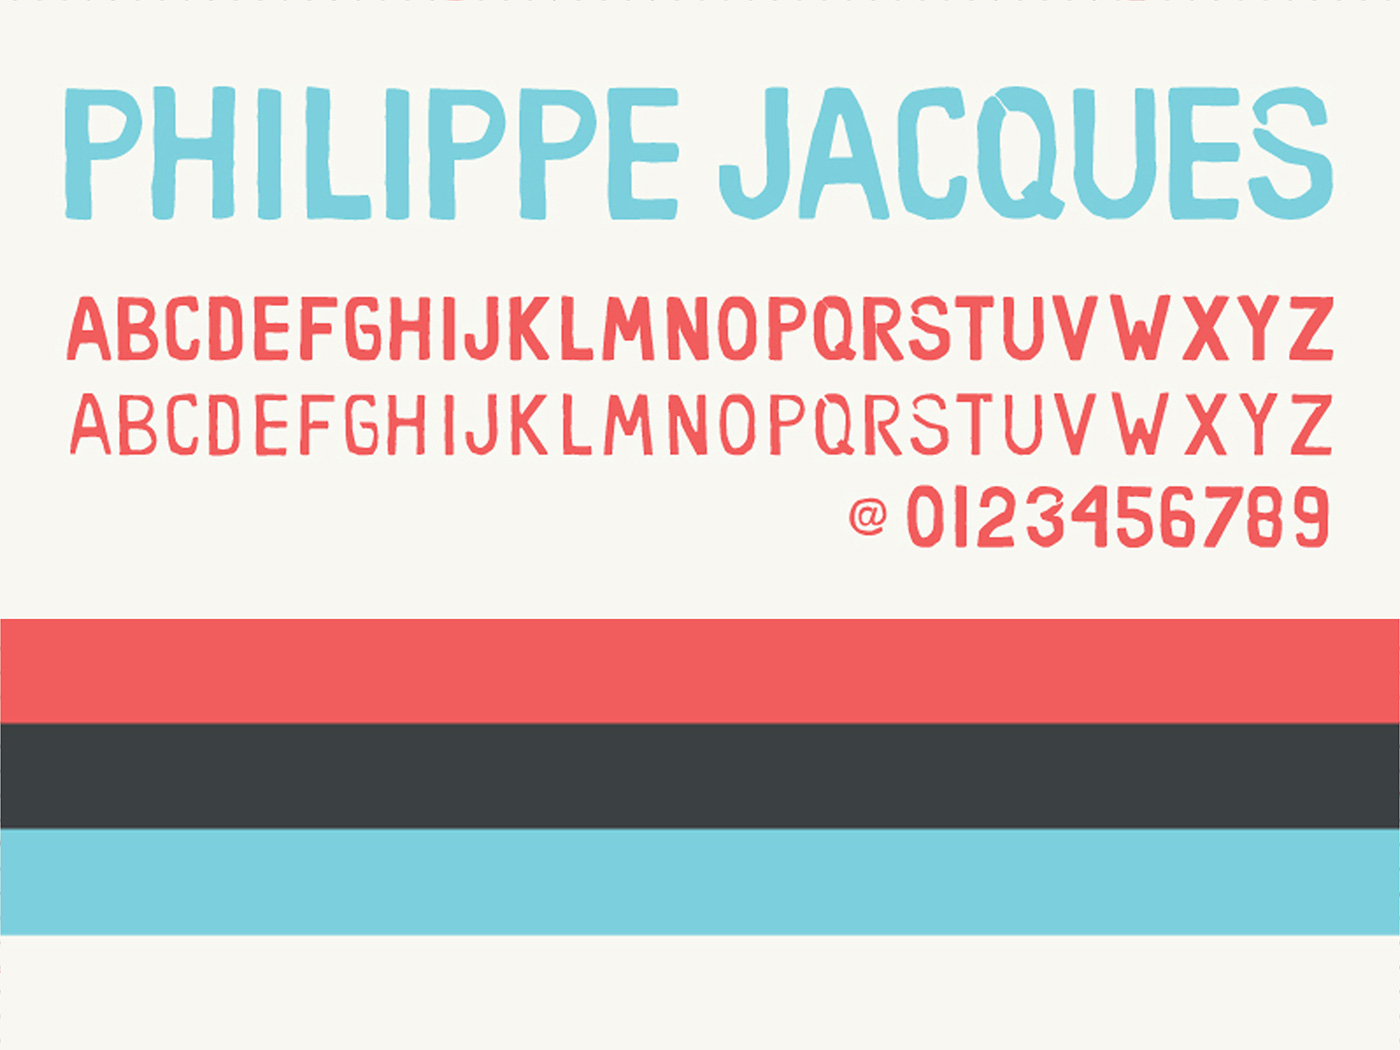 Philippe Jacques identity logo